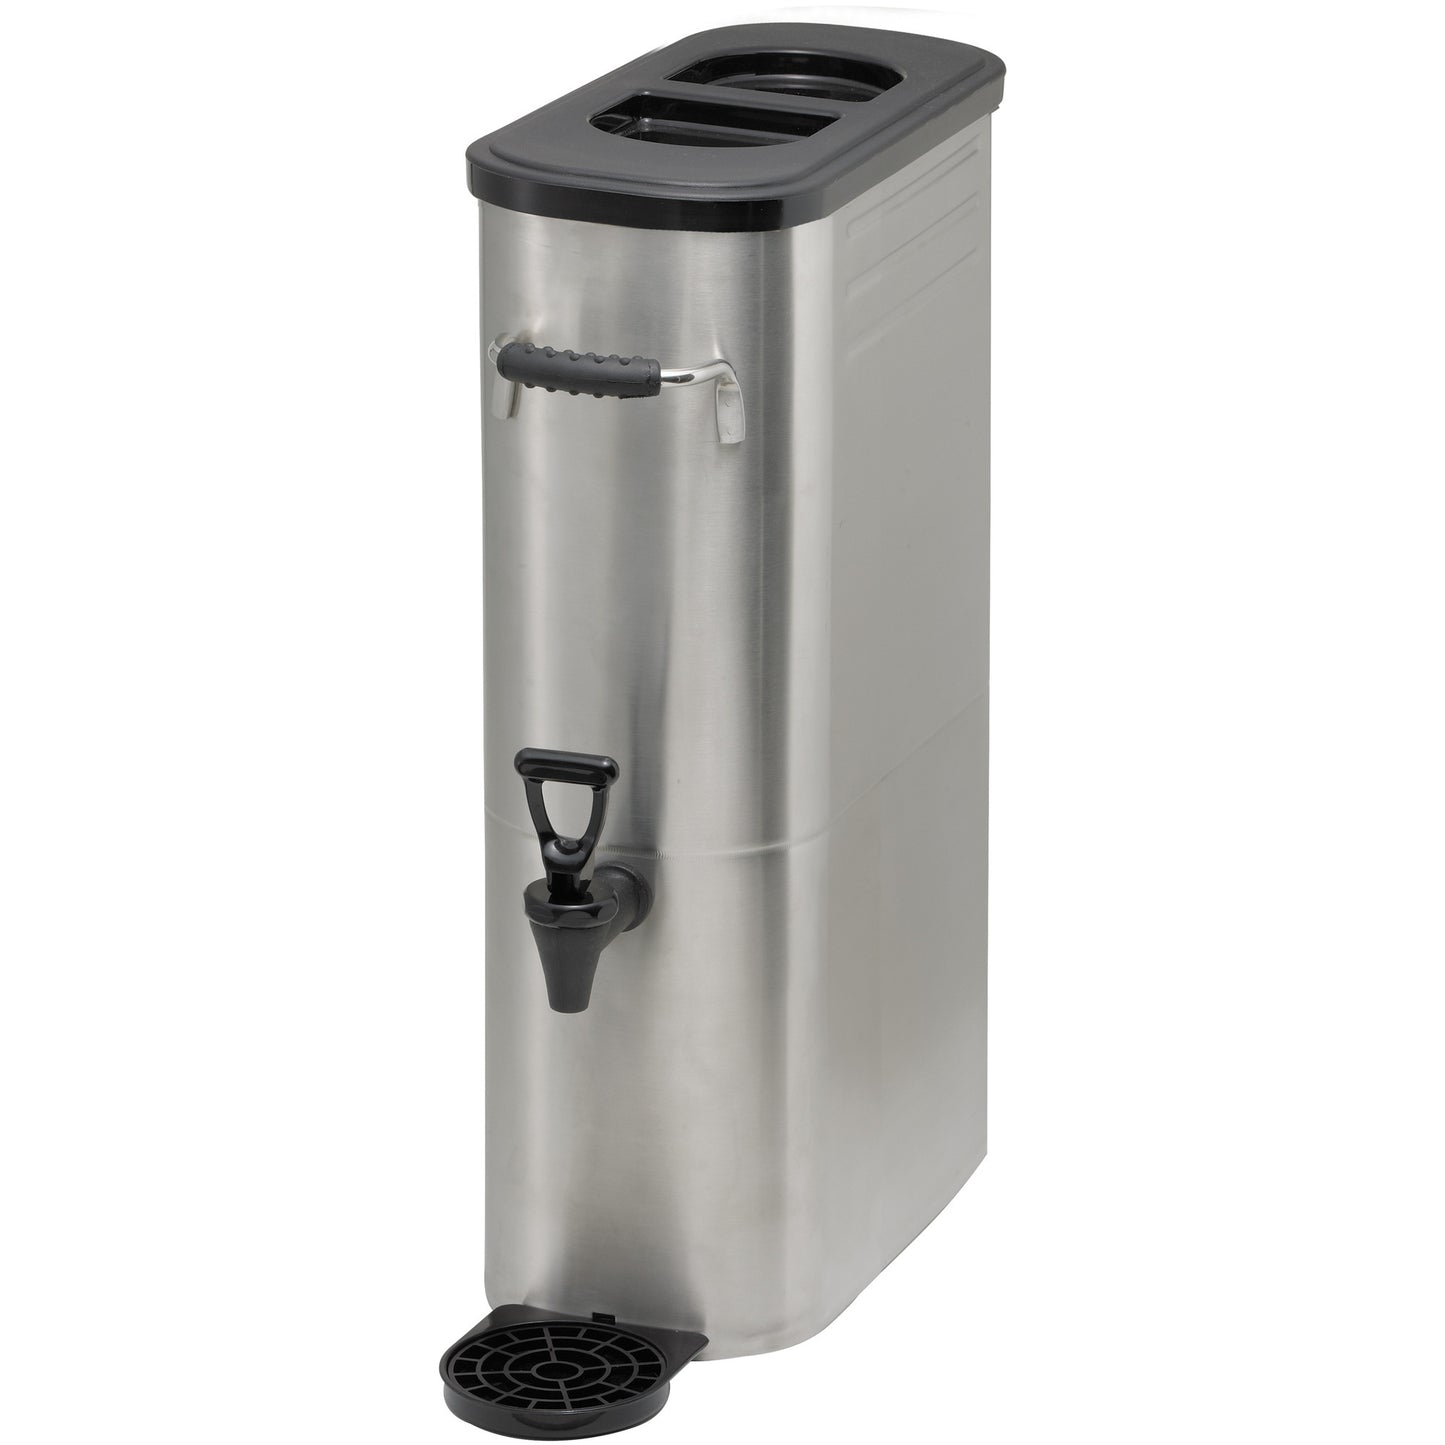 SSBD-3 - Slim Iced Tea Dispenser, Stainless Steel - 3 Gallon